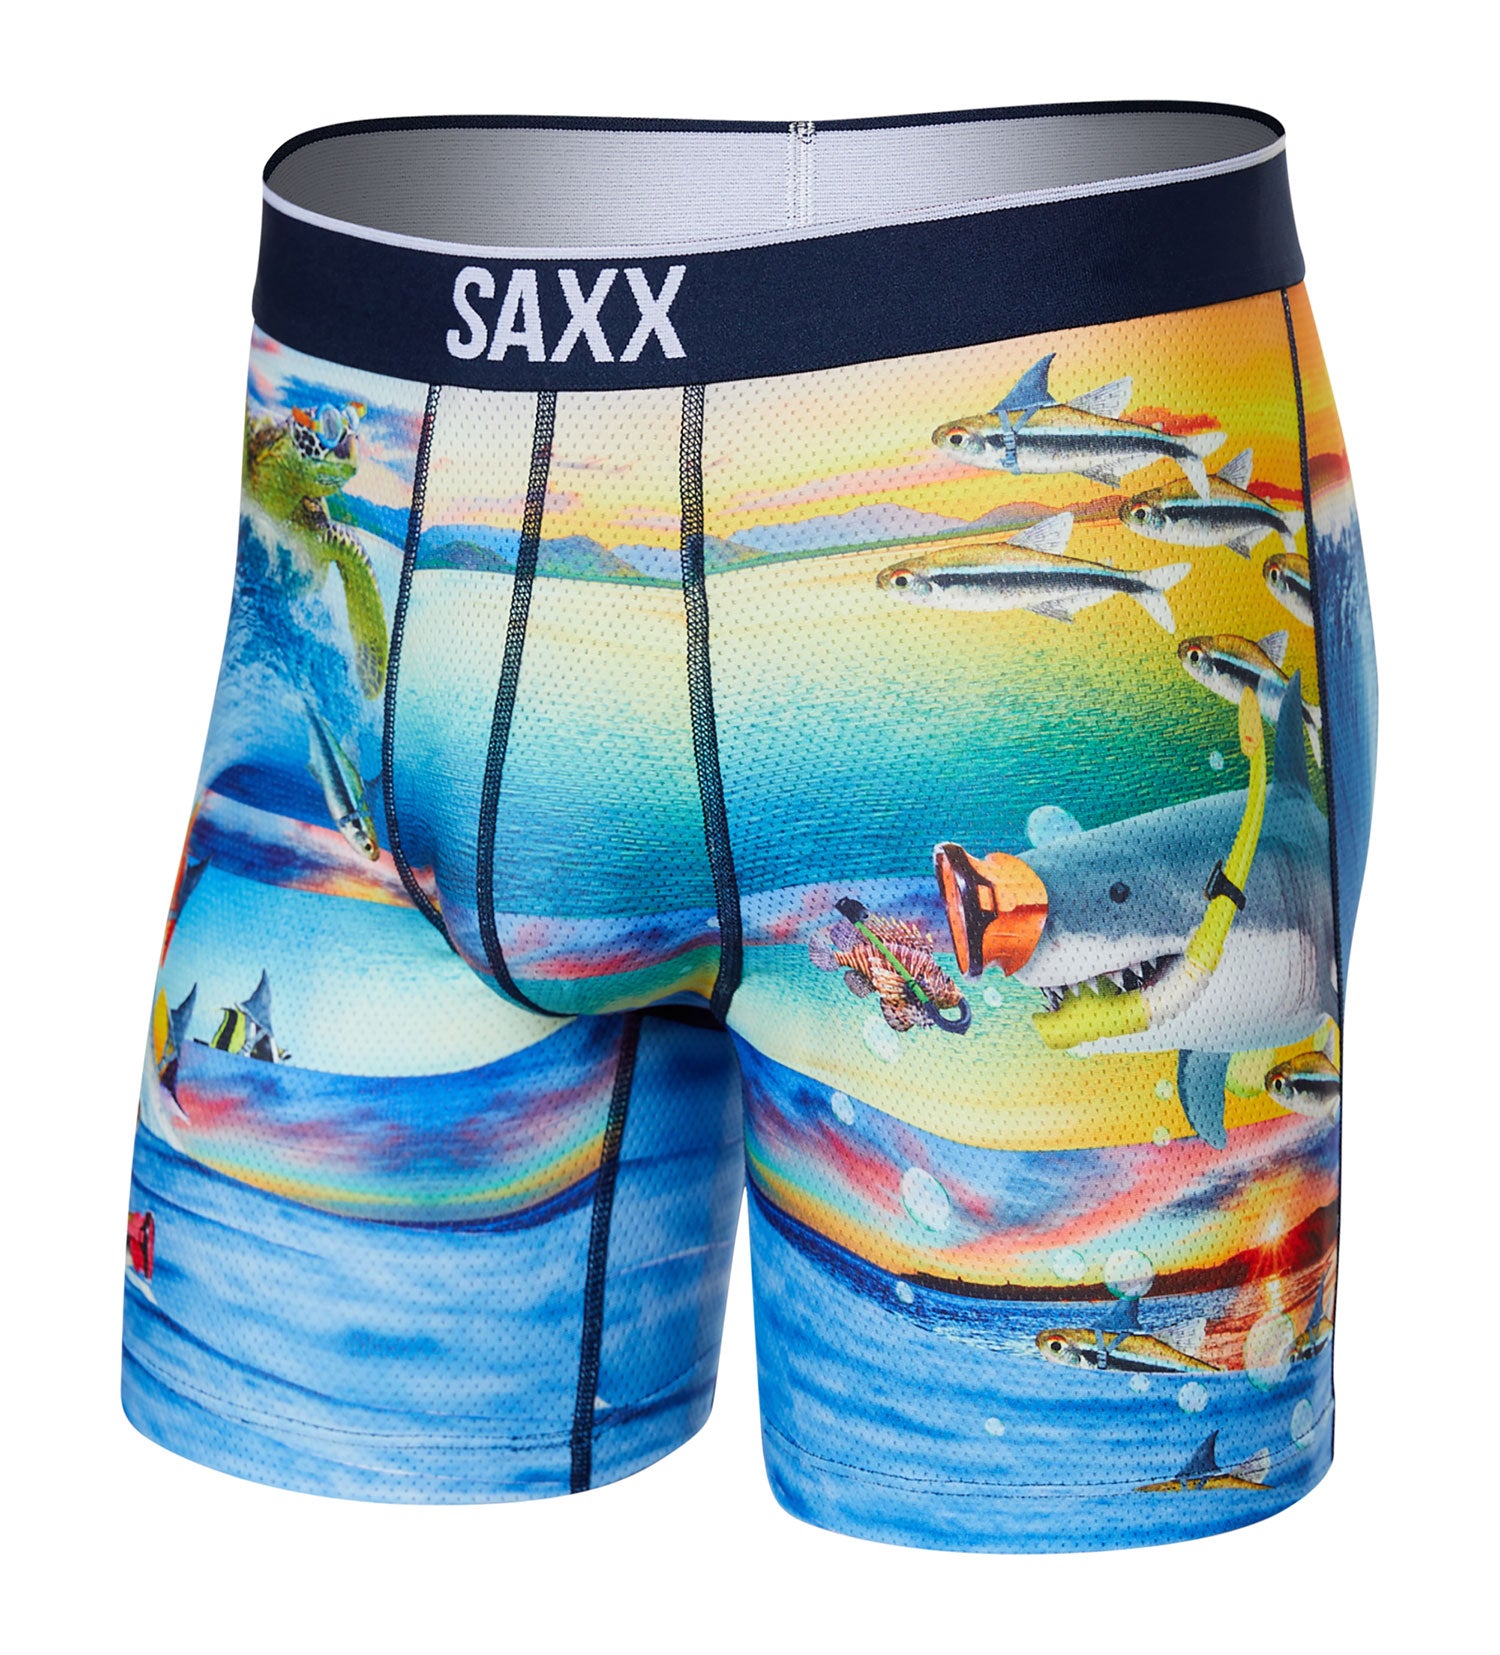 Saxx Men's Underwear – Volt Boxer Briefs with Built-in Ballpark Pouch  Support – Workout Underwear for Men, Core, Medium